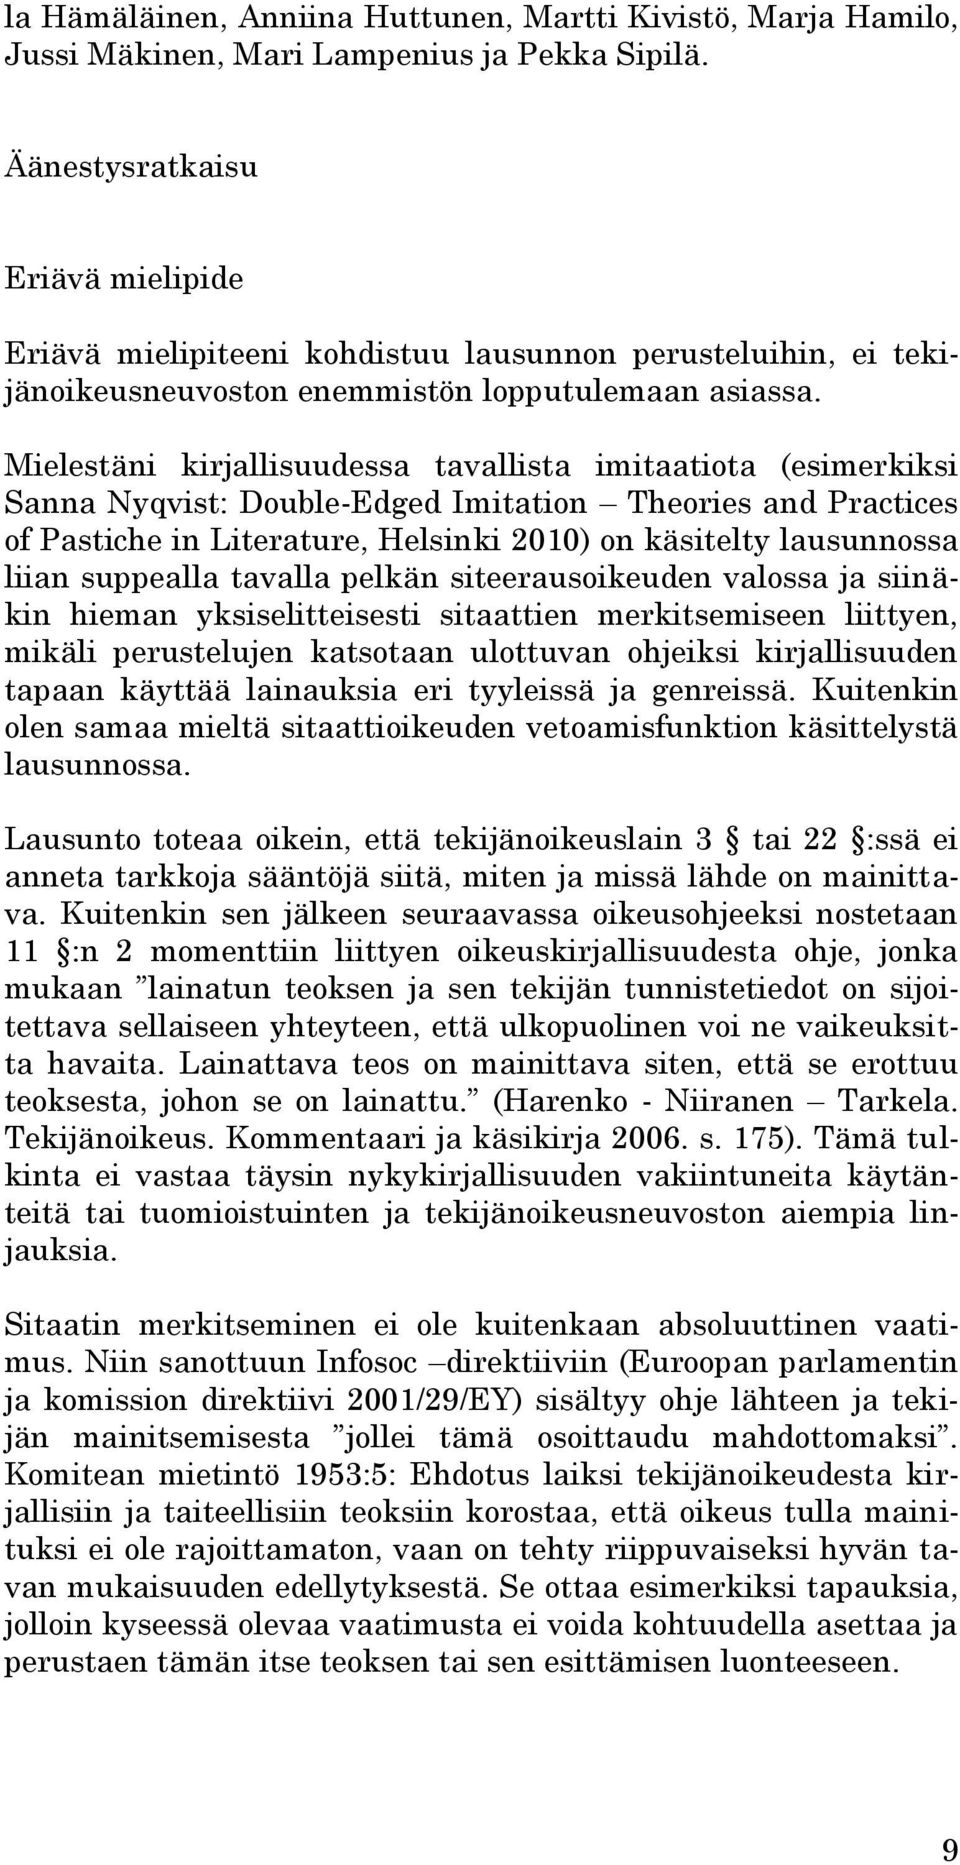 Mielestäni kirjallisuudessa tavallista imitaatiota (esimerkiksi Sanna Nyqvist: Double-Edged Imitation Theories and Practices of Pastiche in Literature, Helsinki 2010) on käsitelty lausunnossa liian